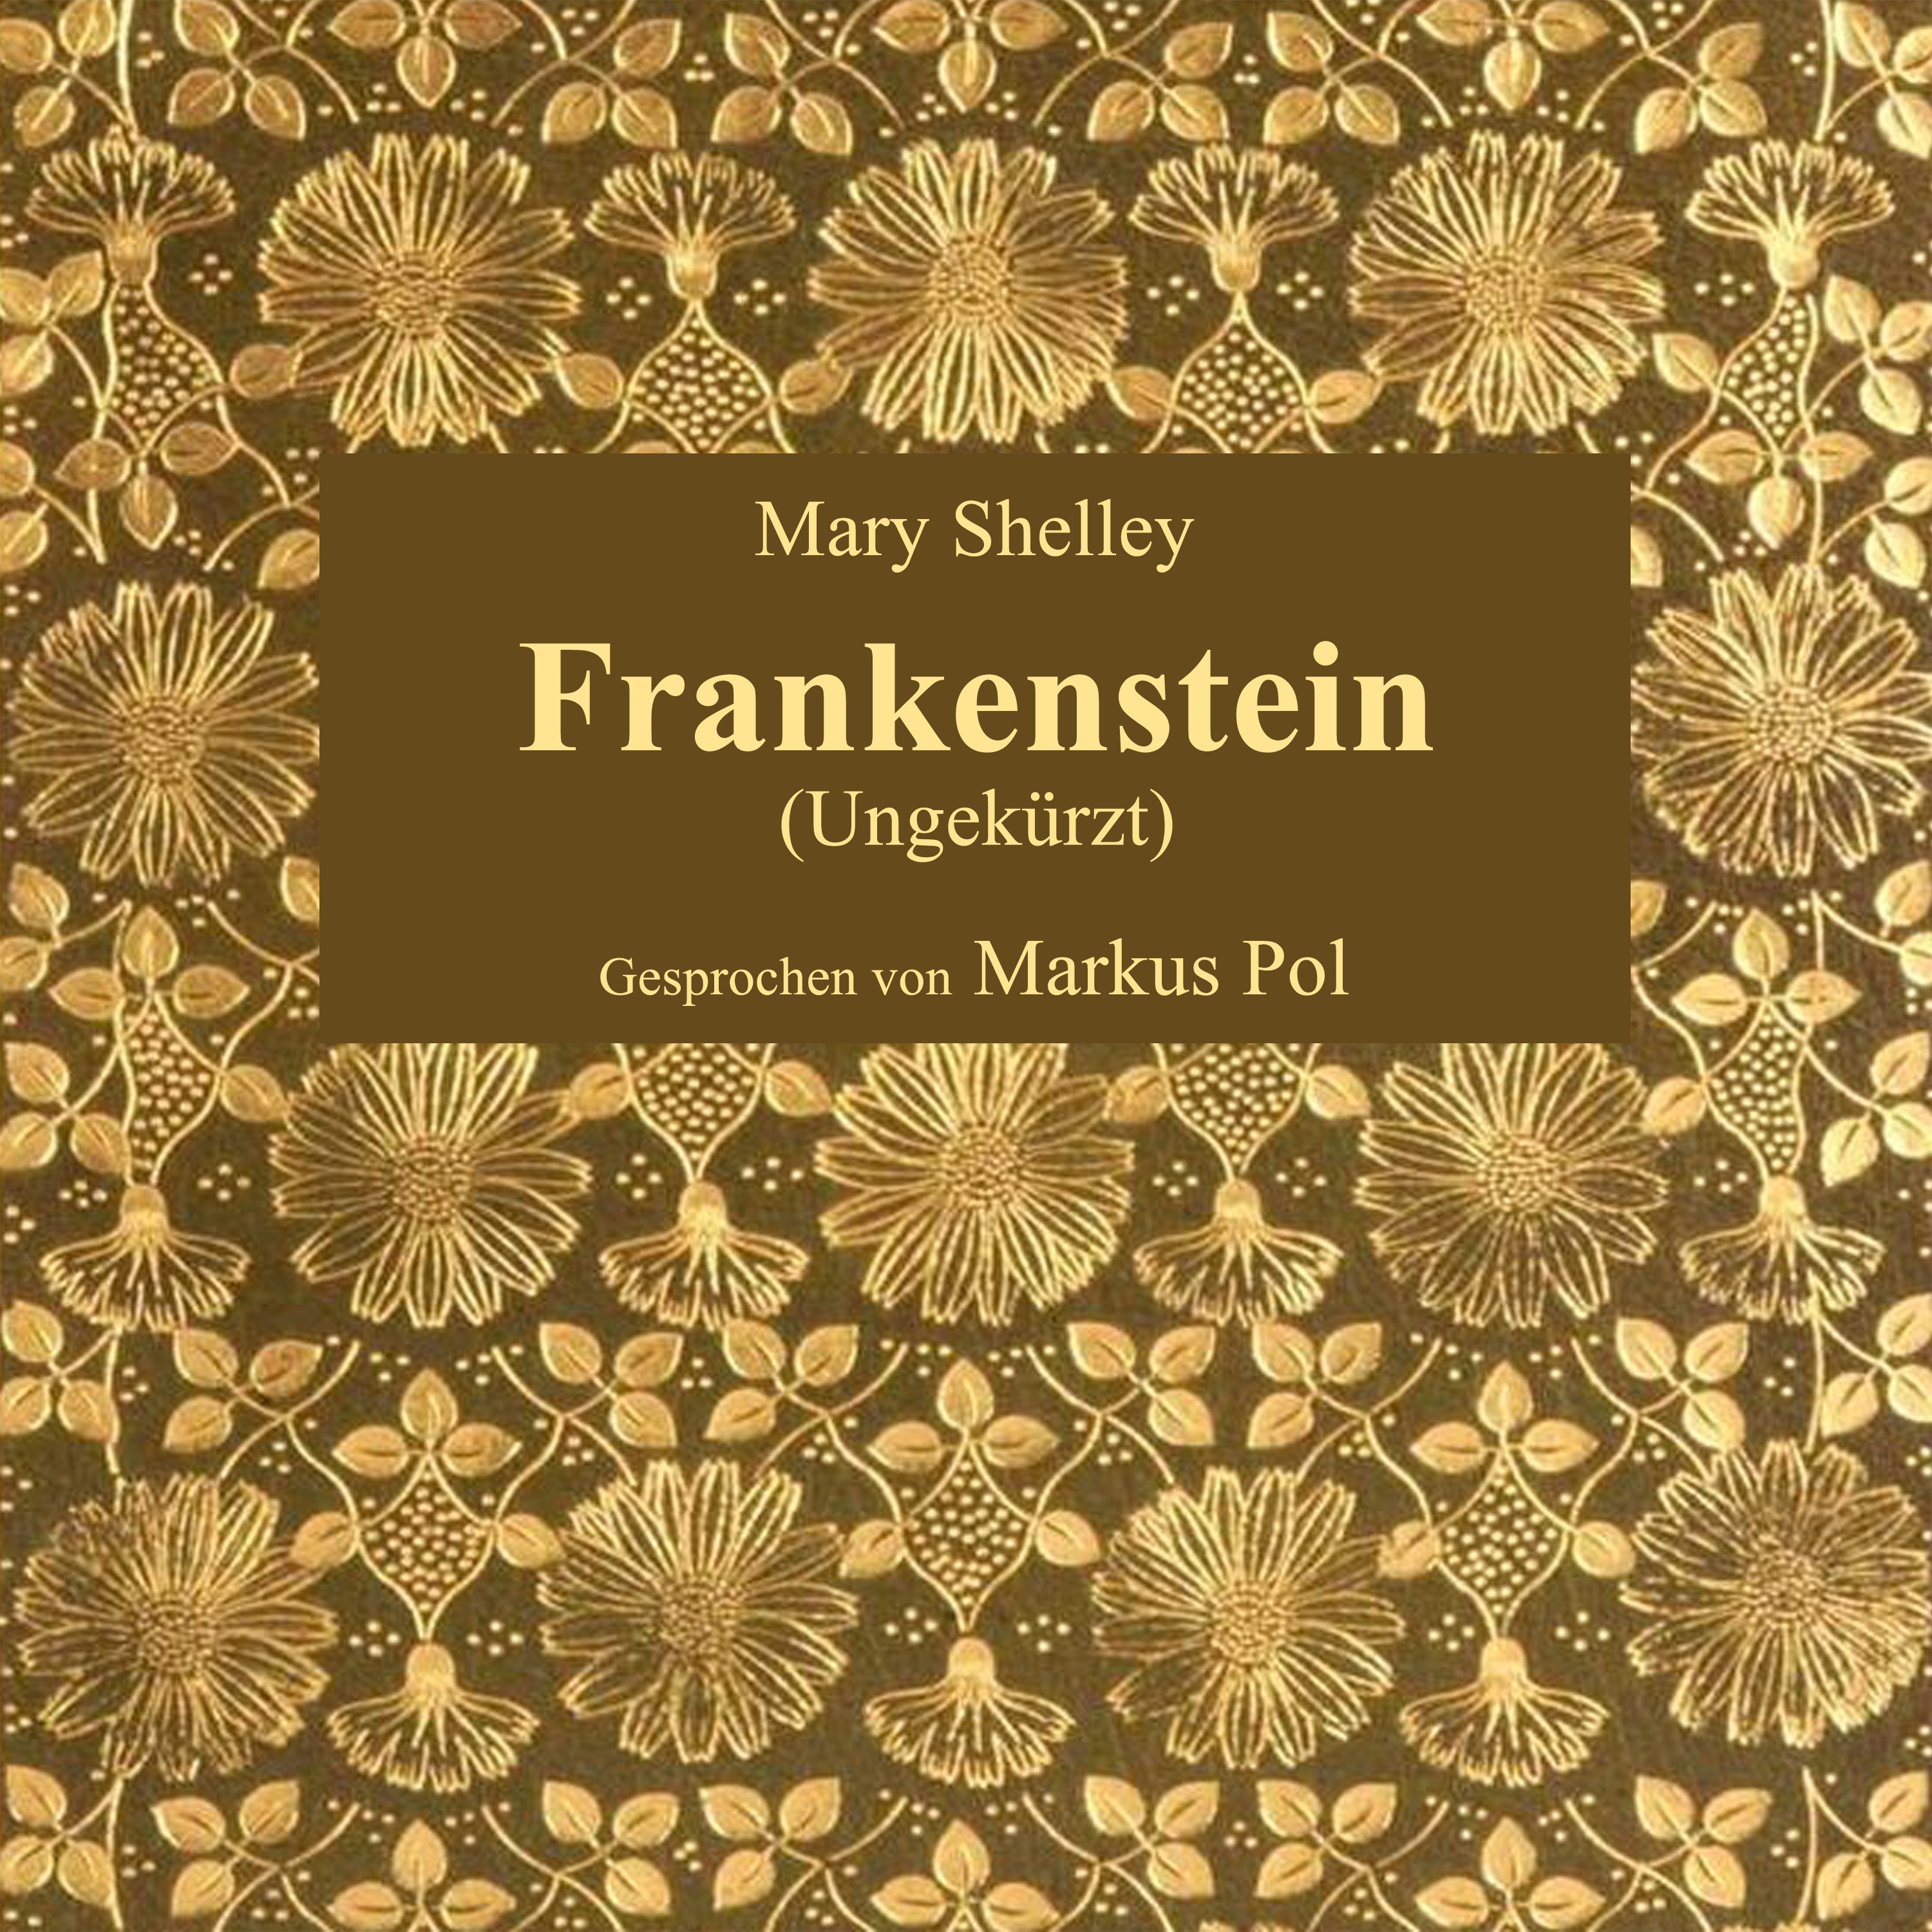 Kapitel 2: Frankenstein (Teil 25)